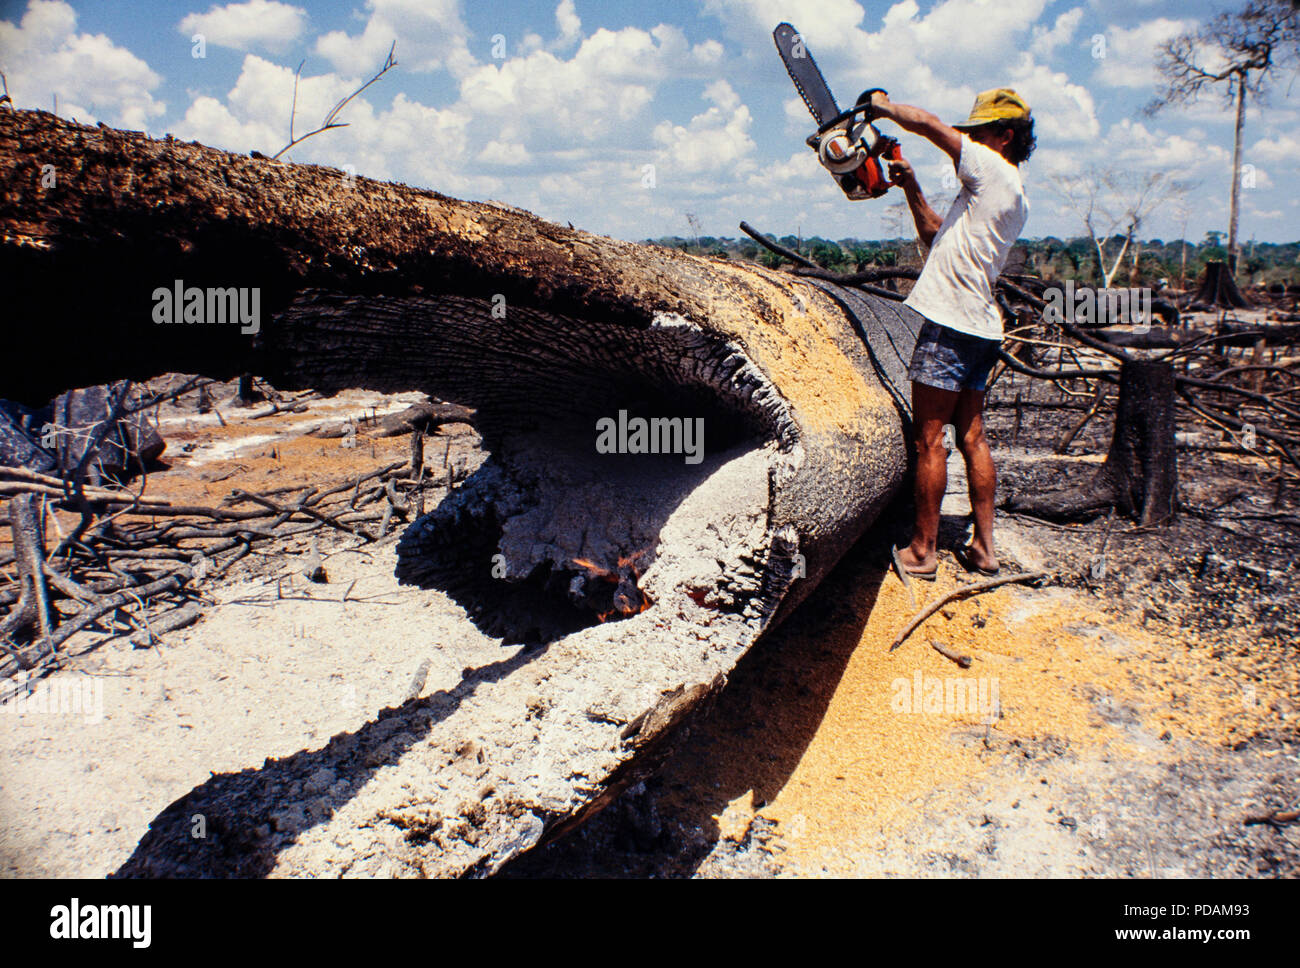 Registro, selva amazónica de minas, trabajadores cortan árboles con motosierra en un cortados y quemados, parche de bosque. El estado de Acre, Brasil. Foto de stock